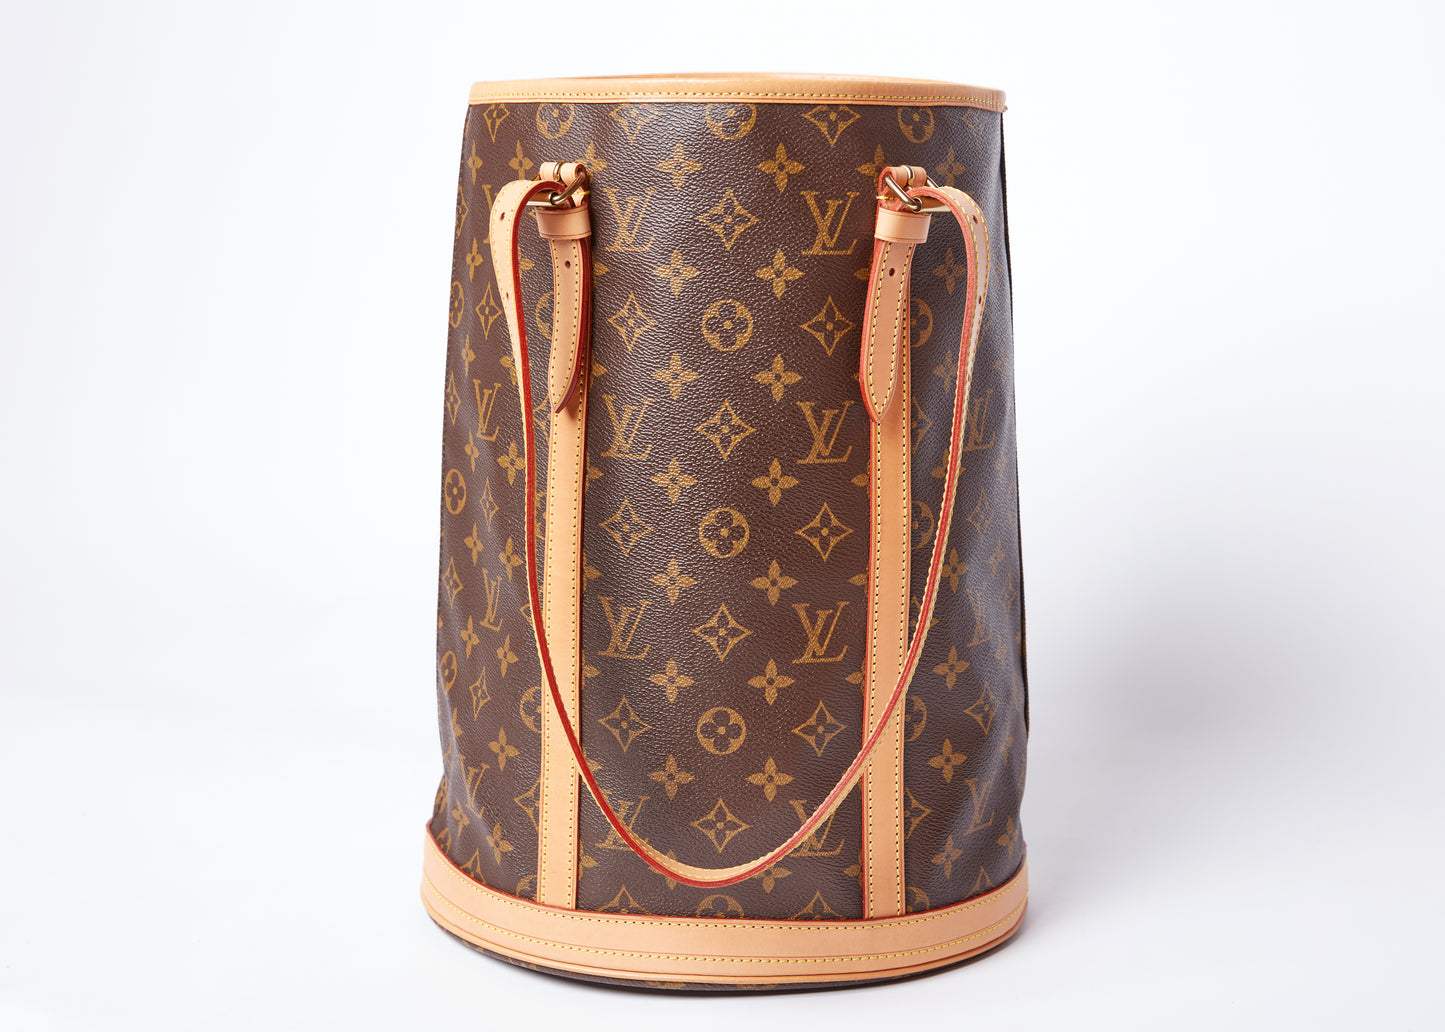 100% authentic Louis-Vuitton barrel bag